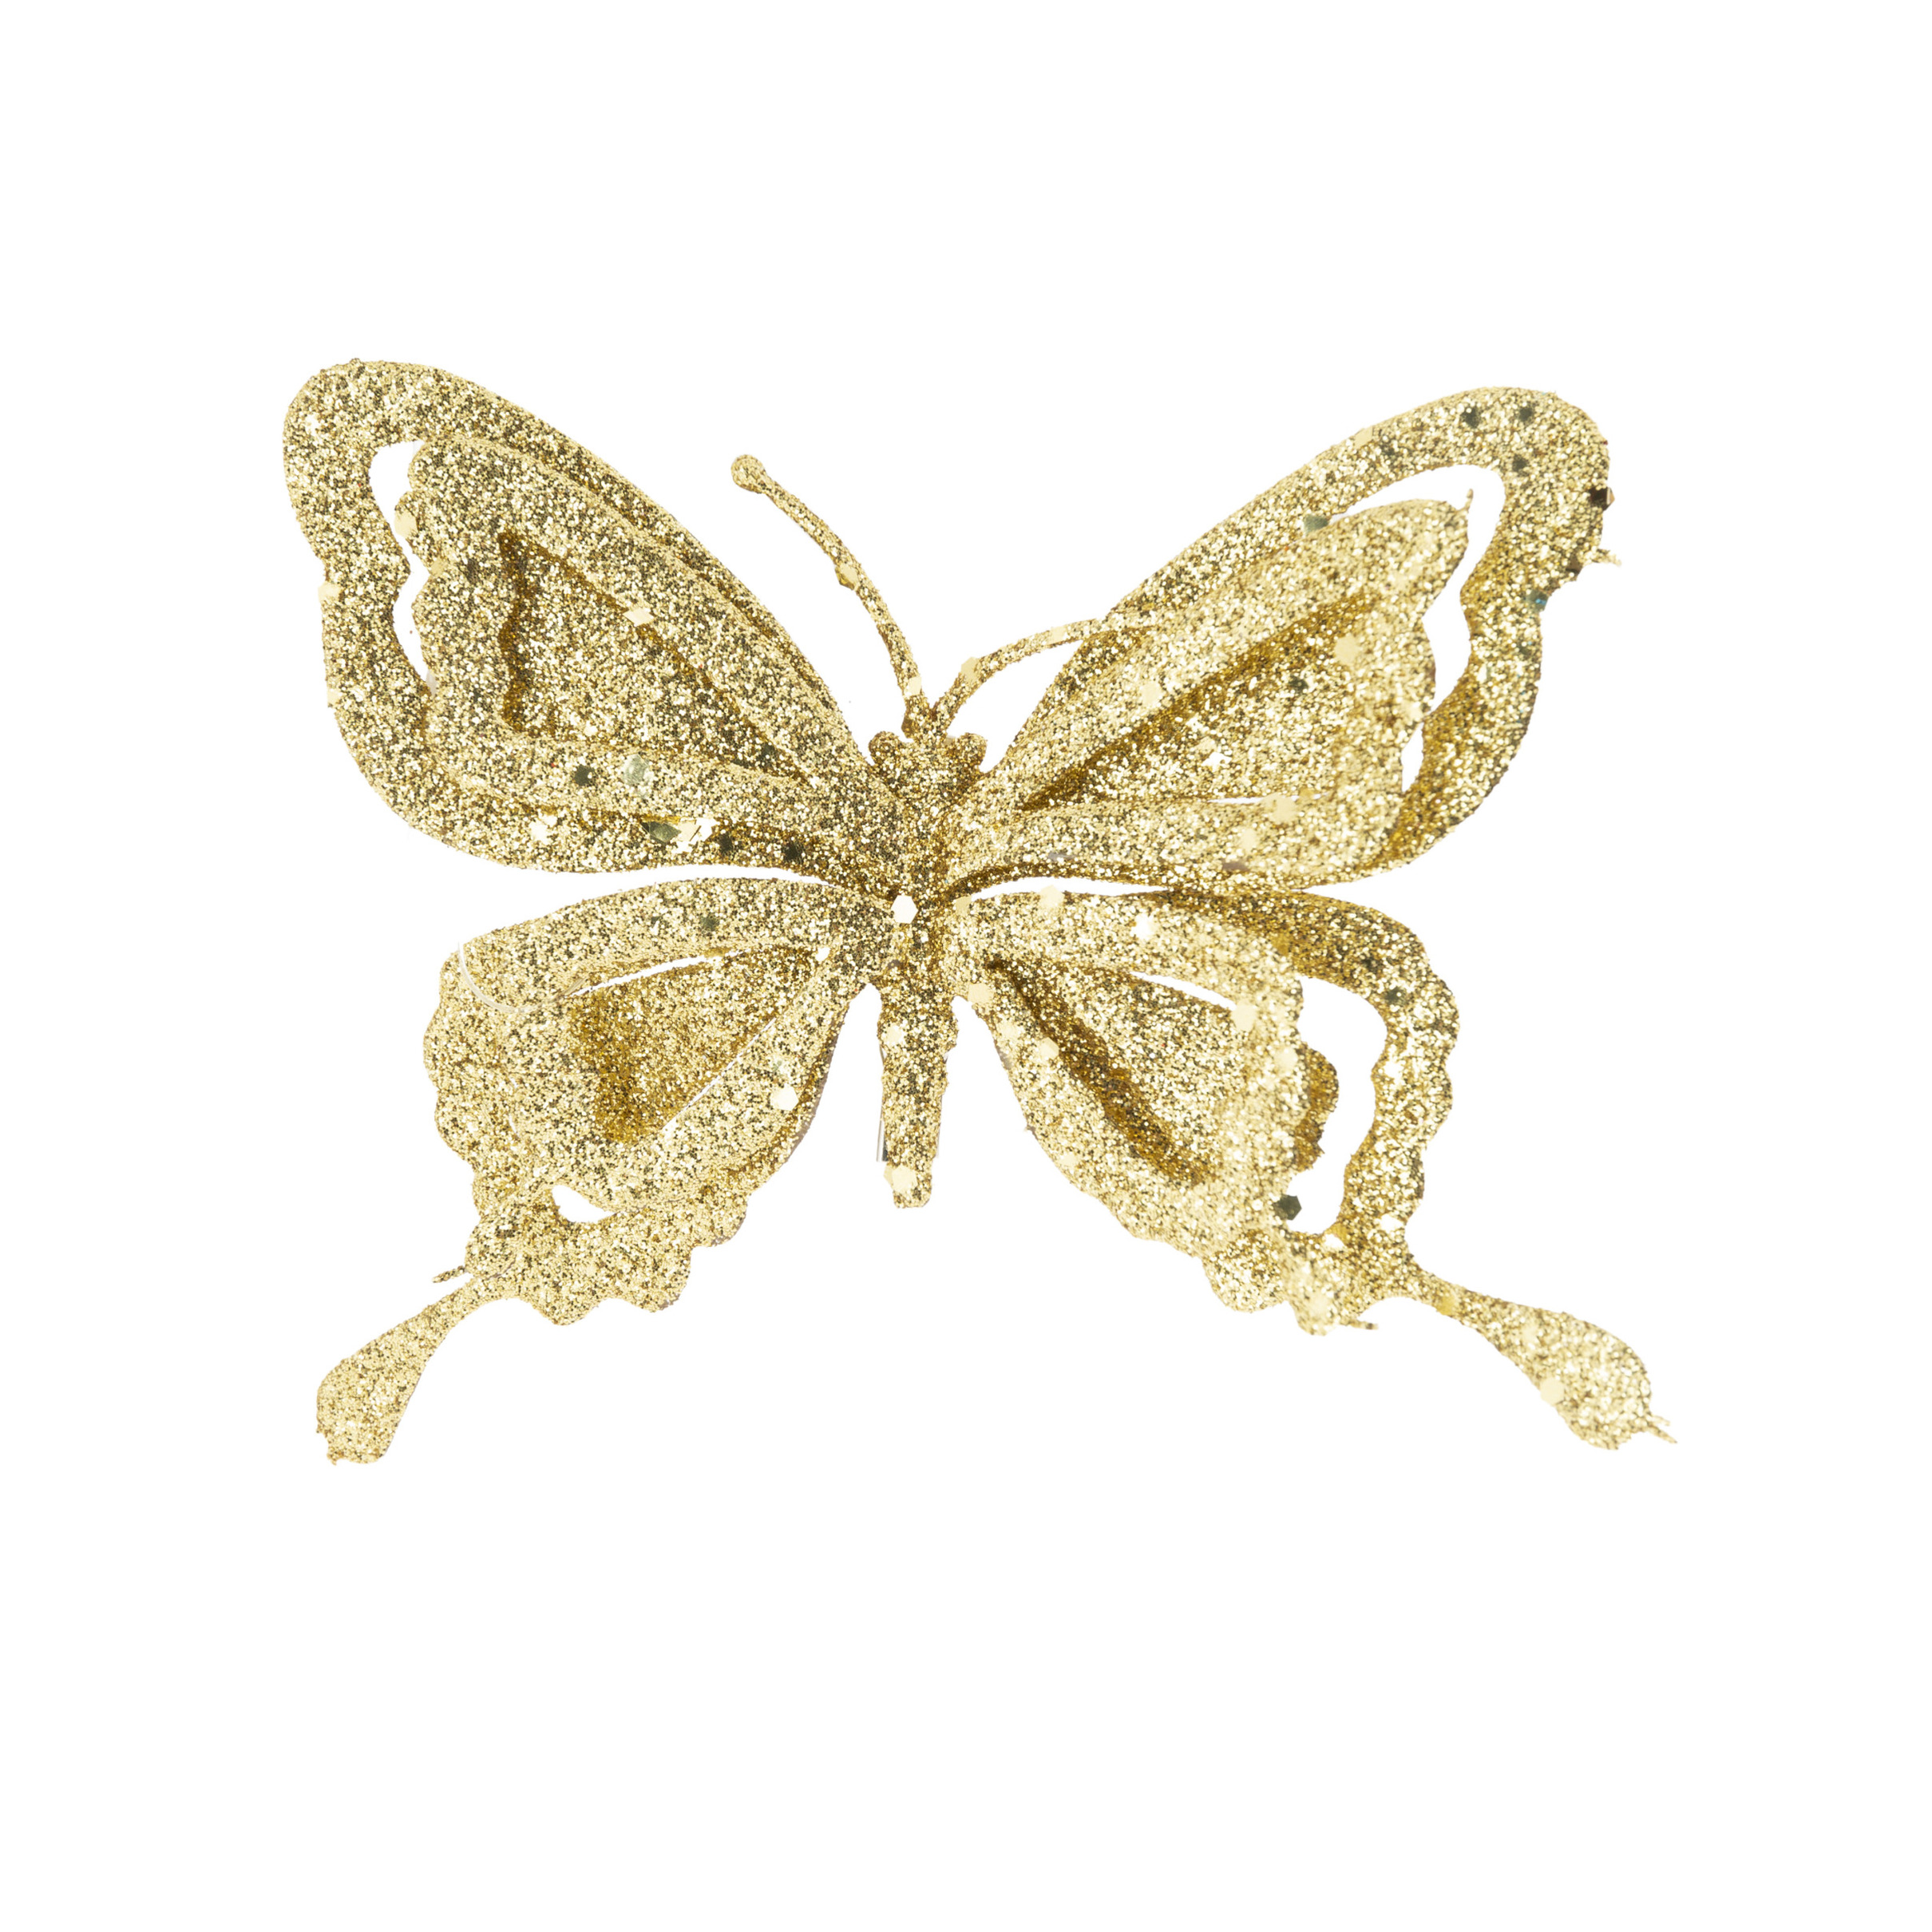 1x stuks decoratie vlinders op clip glitter goud 14 cm